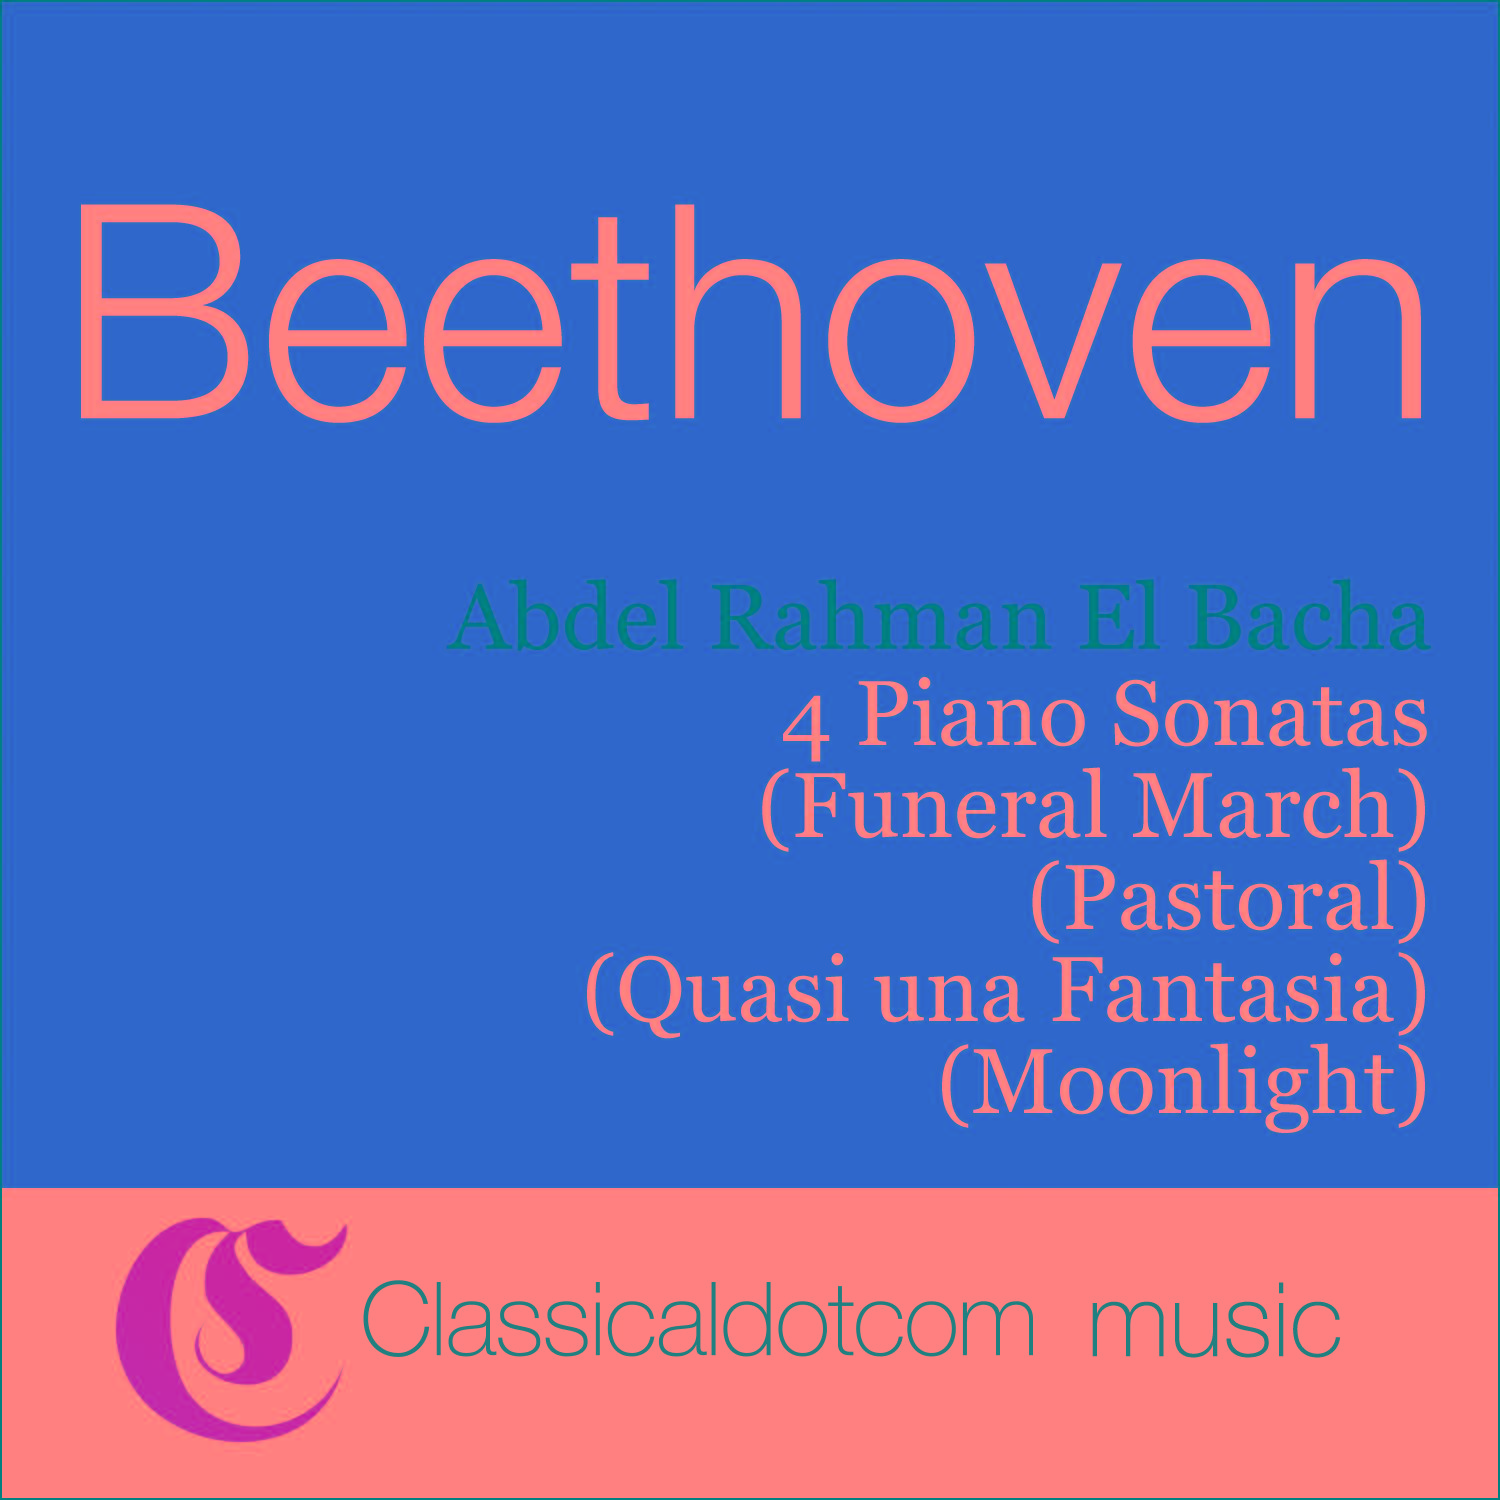 Piano Sonata No. 14 in C sharp minor, Op. 27 No. 2 (Moonlight) - Presto agitato